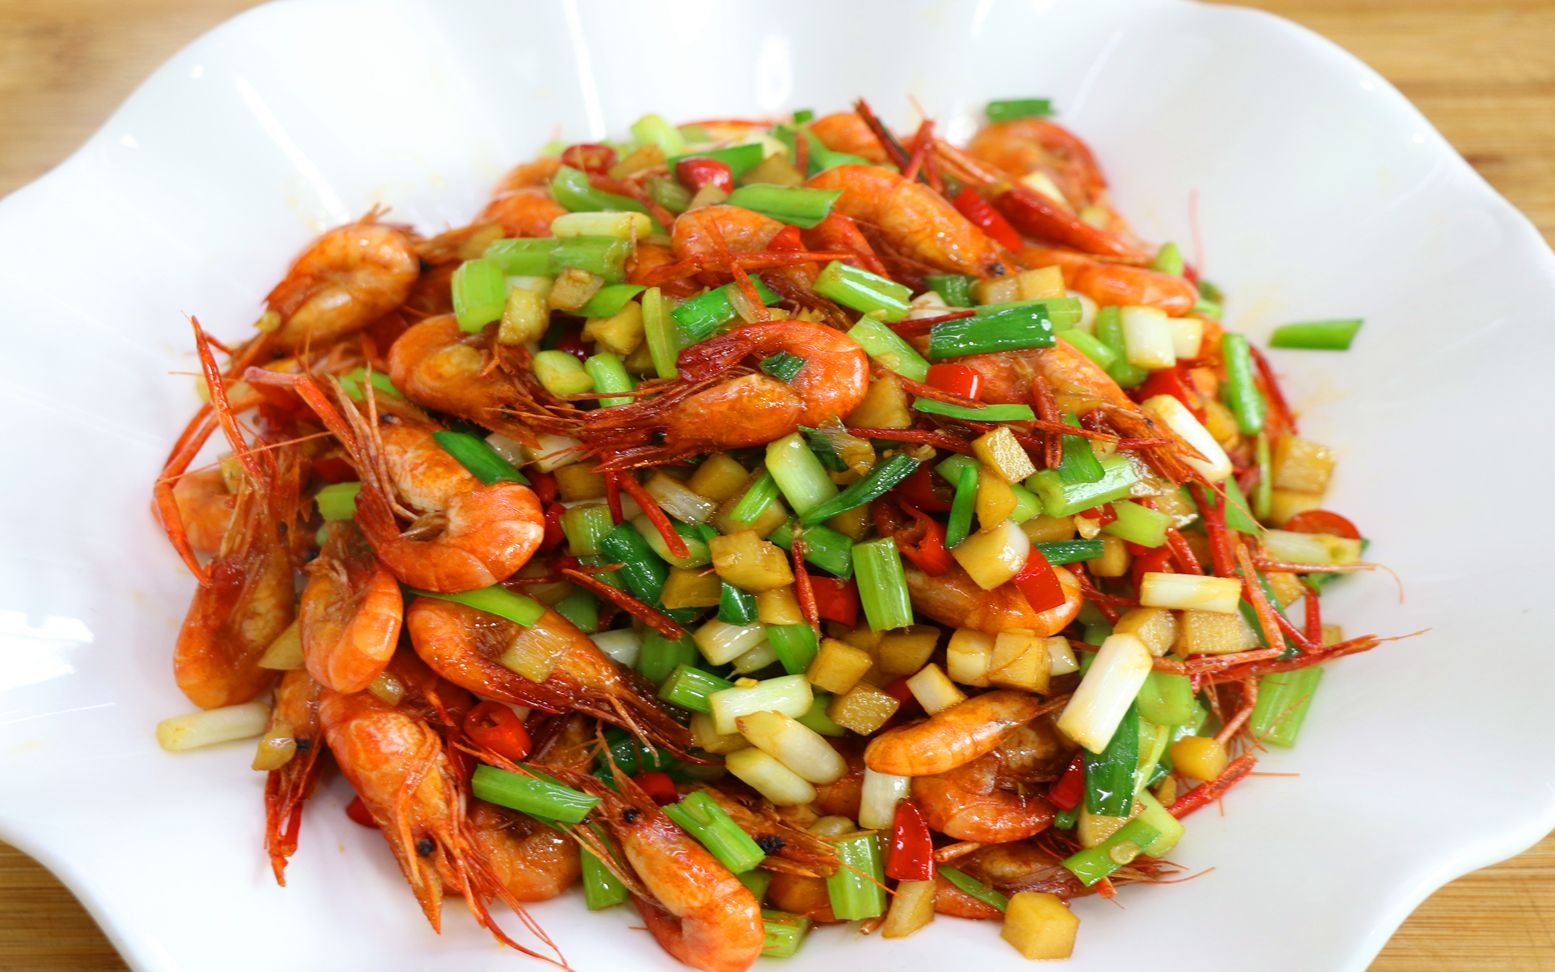 川菜师傅教你河虾的做法,这样炒虾肉细嫩味道浓郁,比白灼更好吃